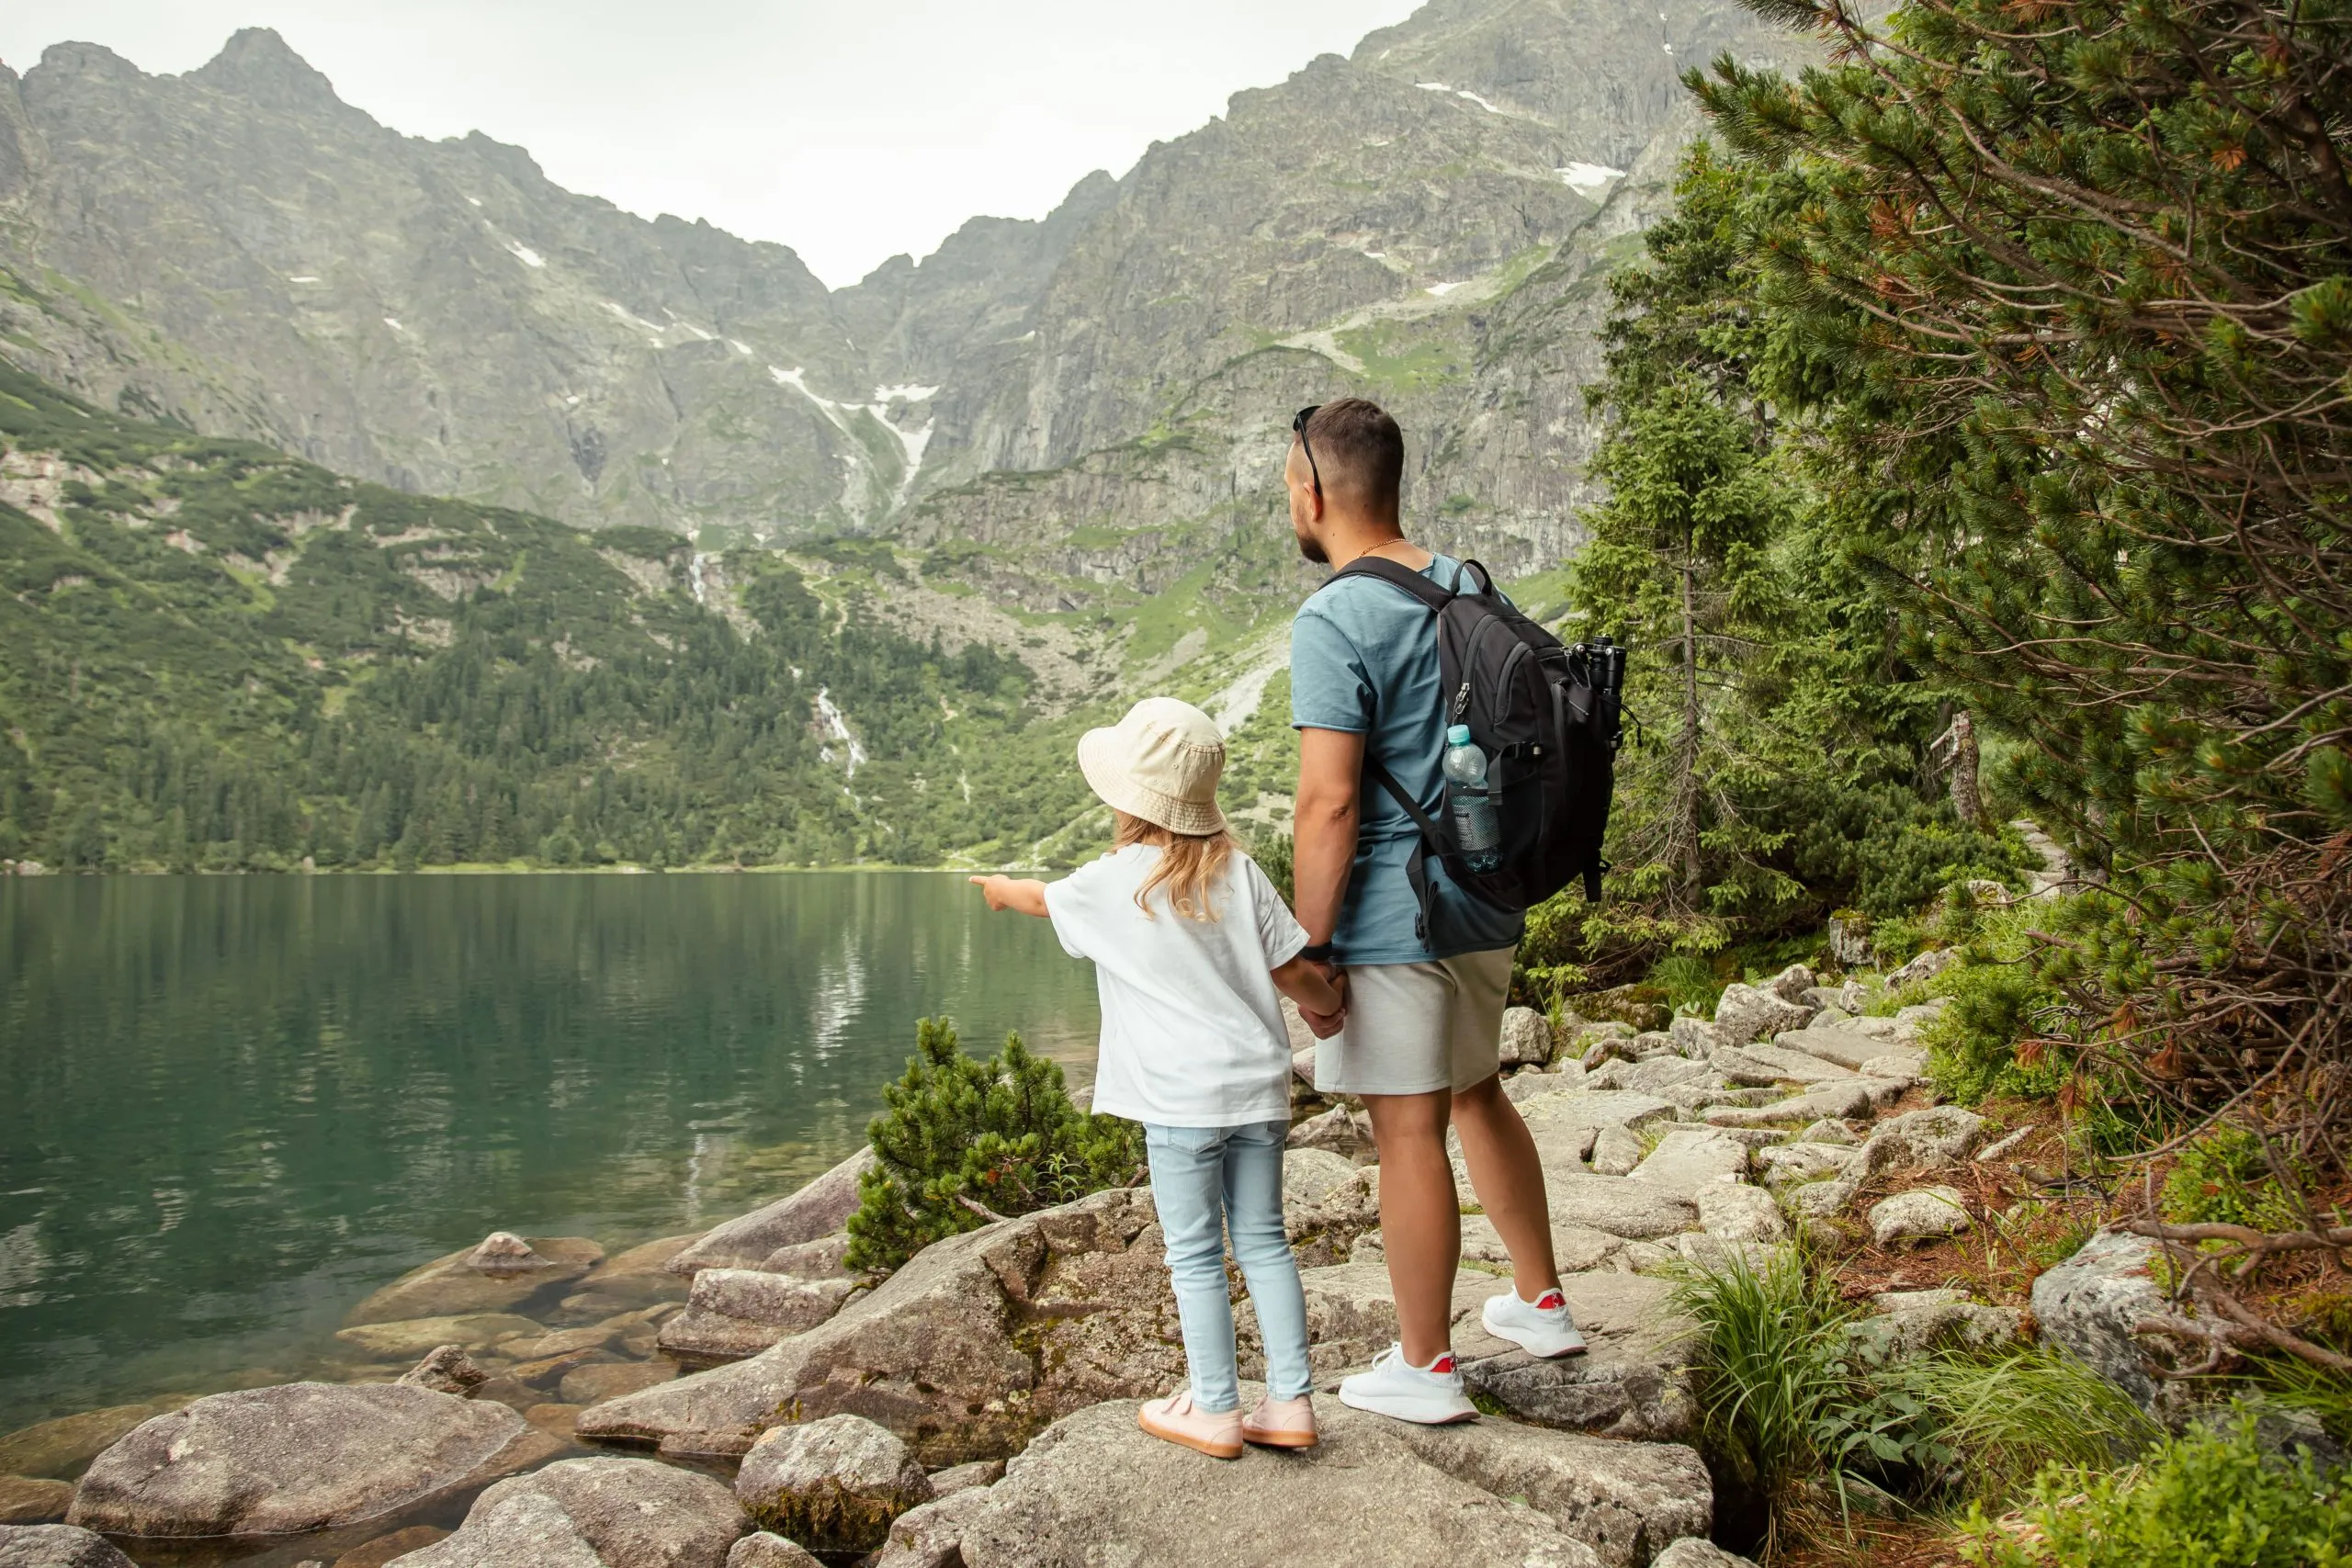 Man en kind toeristen in bergen bij Morskie Oko meer in de buurt van Zakopane, Tatragebergte, Polen. Reisconcept voor gezinnen.